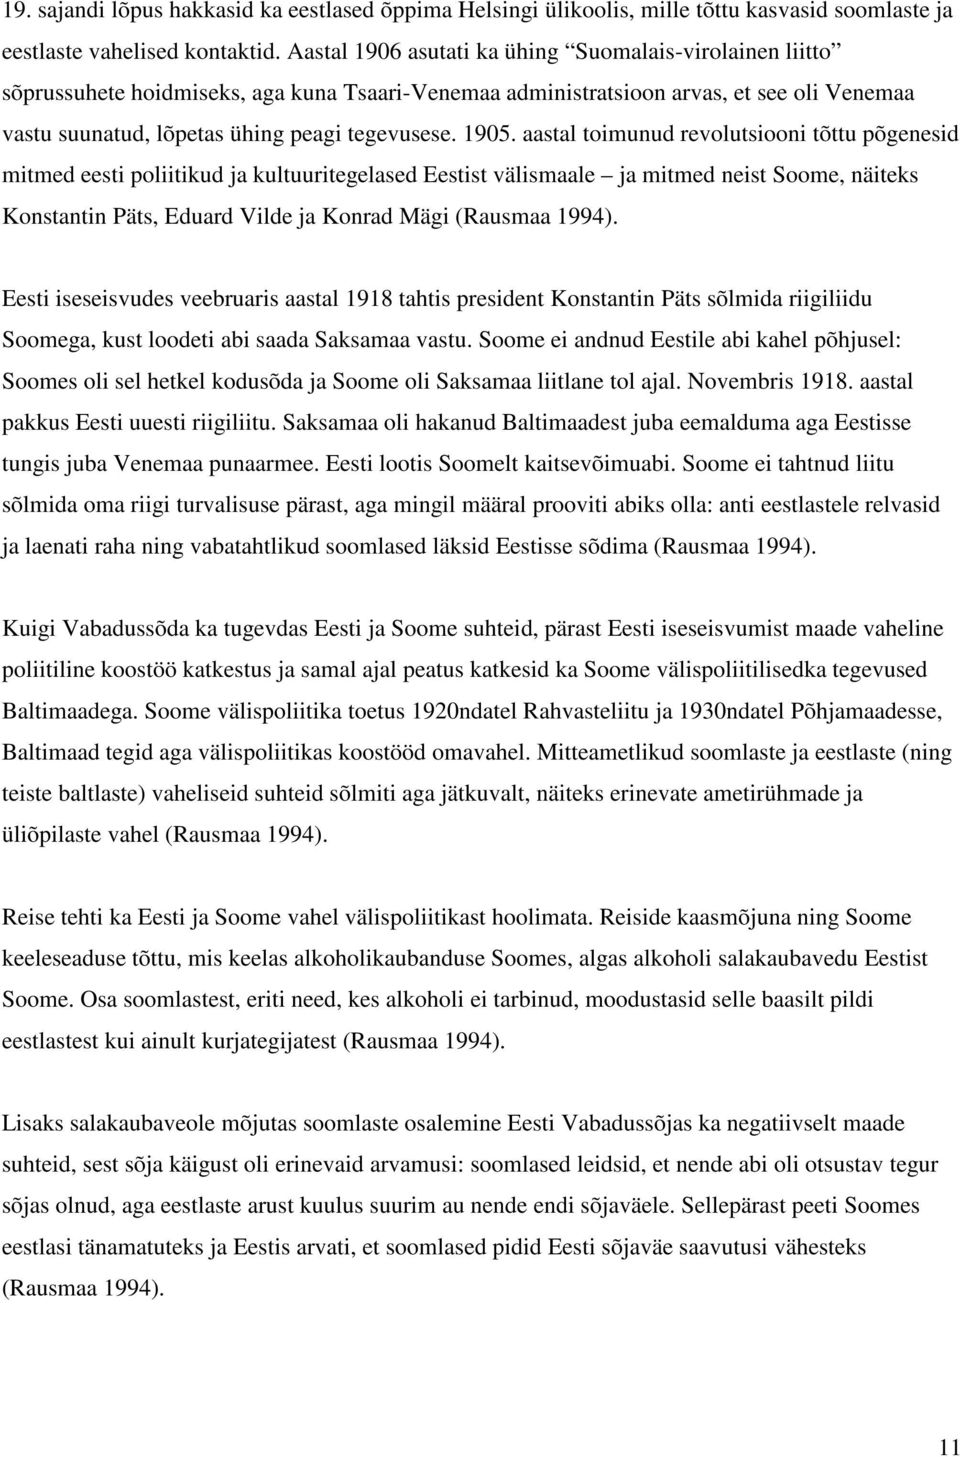 1905. aastal toimunud revolutsiooni tõttu põgenesid mitmed eesti poliitikud ja kultuuritegelased Eestist välismaale ja mitmed neist Soome, näiteks Konstantin Päts, Eduard Vilde ja Konrad Mägi